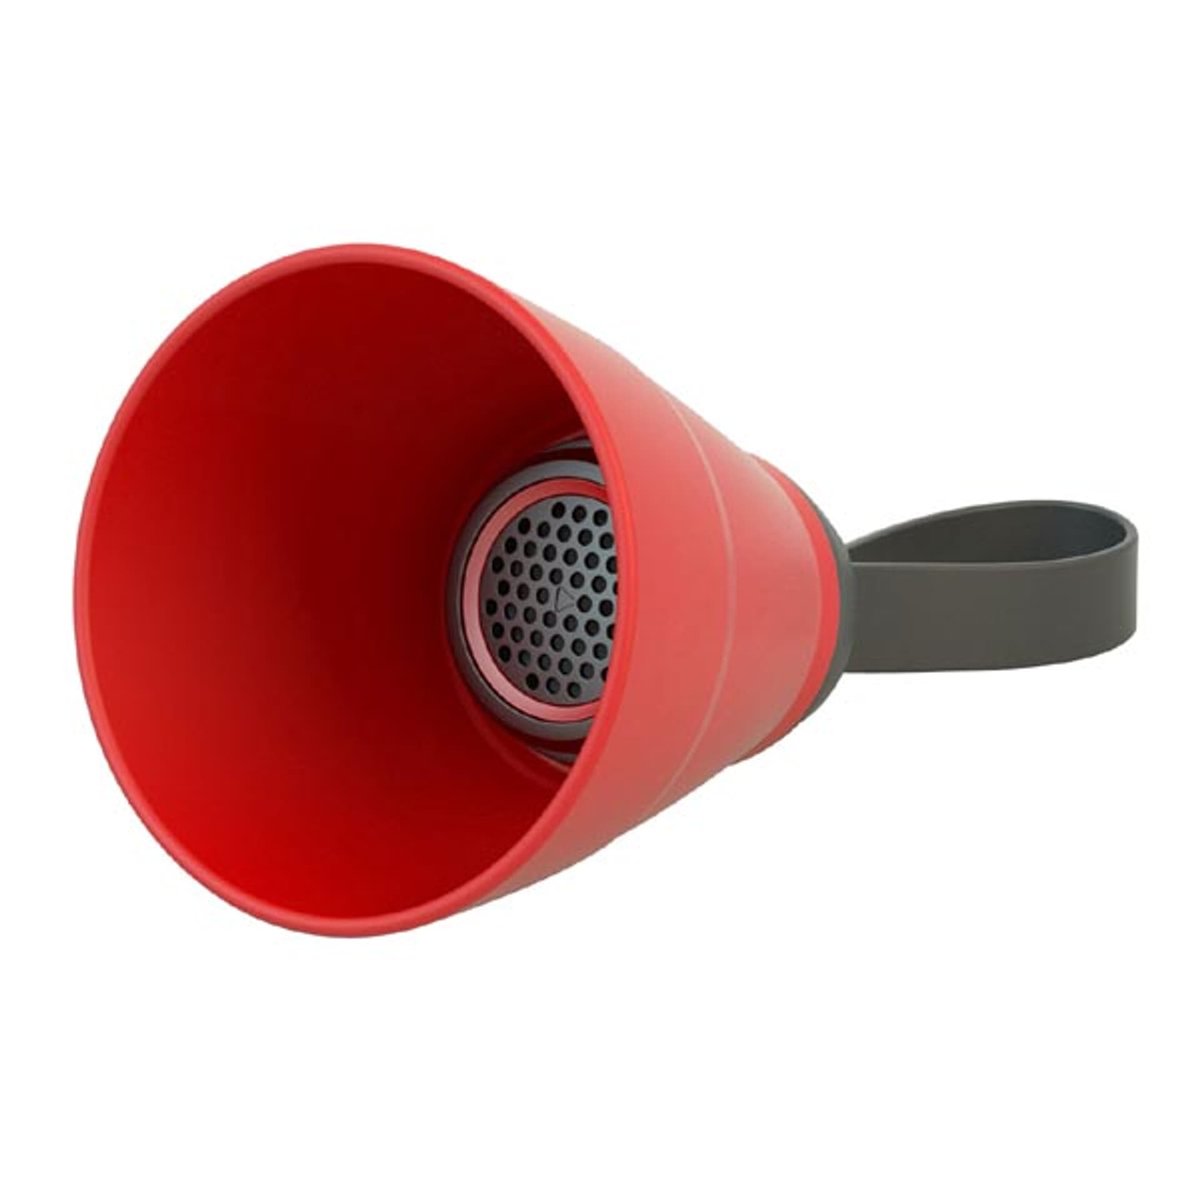 Zdjęcia - Głośniki samochodowe YZSY Głośnik bluetooth SALI, 1.0, 3W, czerwony, regulacja głośności, skład